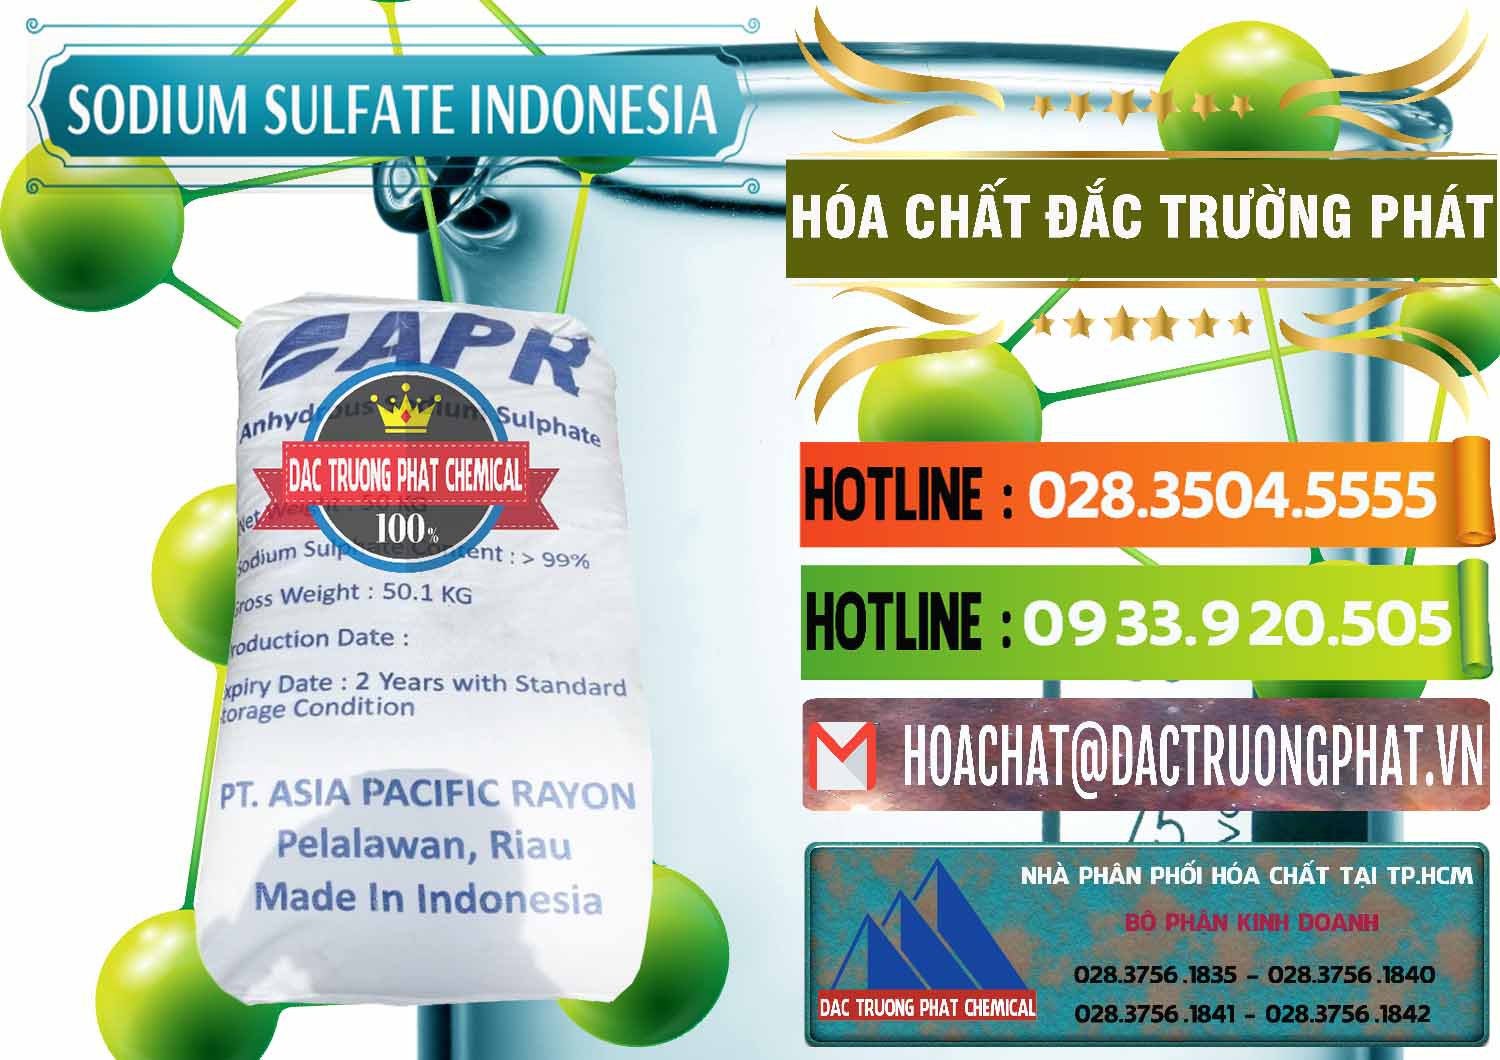 Đơn vị chuyên bán ( cung cấp ) Sodium Sulphate - Muối Sunfat Na2SO4 APR Indonesia - 0460 - Cty phân phối và cung cấp hóa chất tại TP.HCM - cungcaphoachat.com.vn